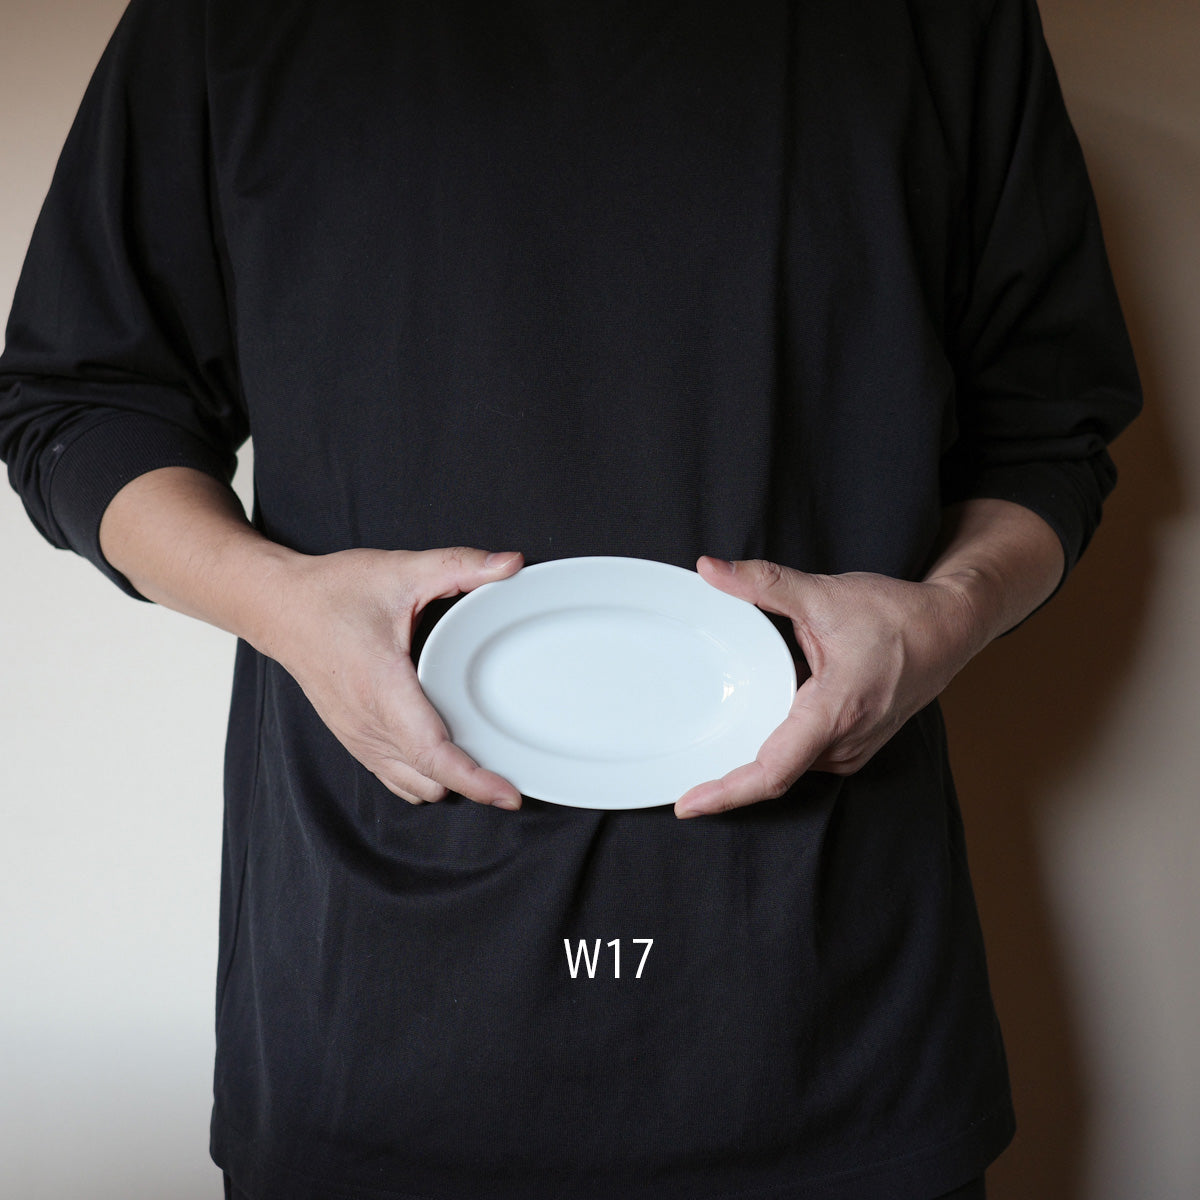 オーバルプレートの理想の形を実現したシンプルでおしゃれなオーバル皿 – デザインショップ oh